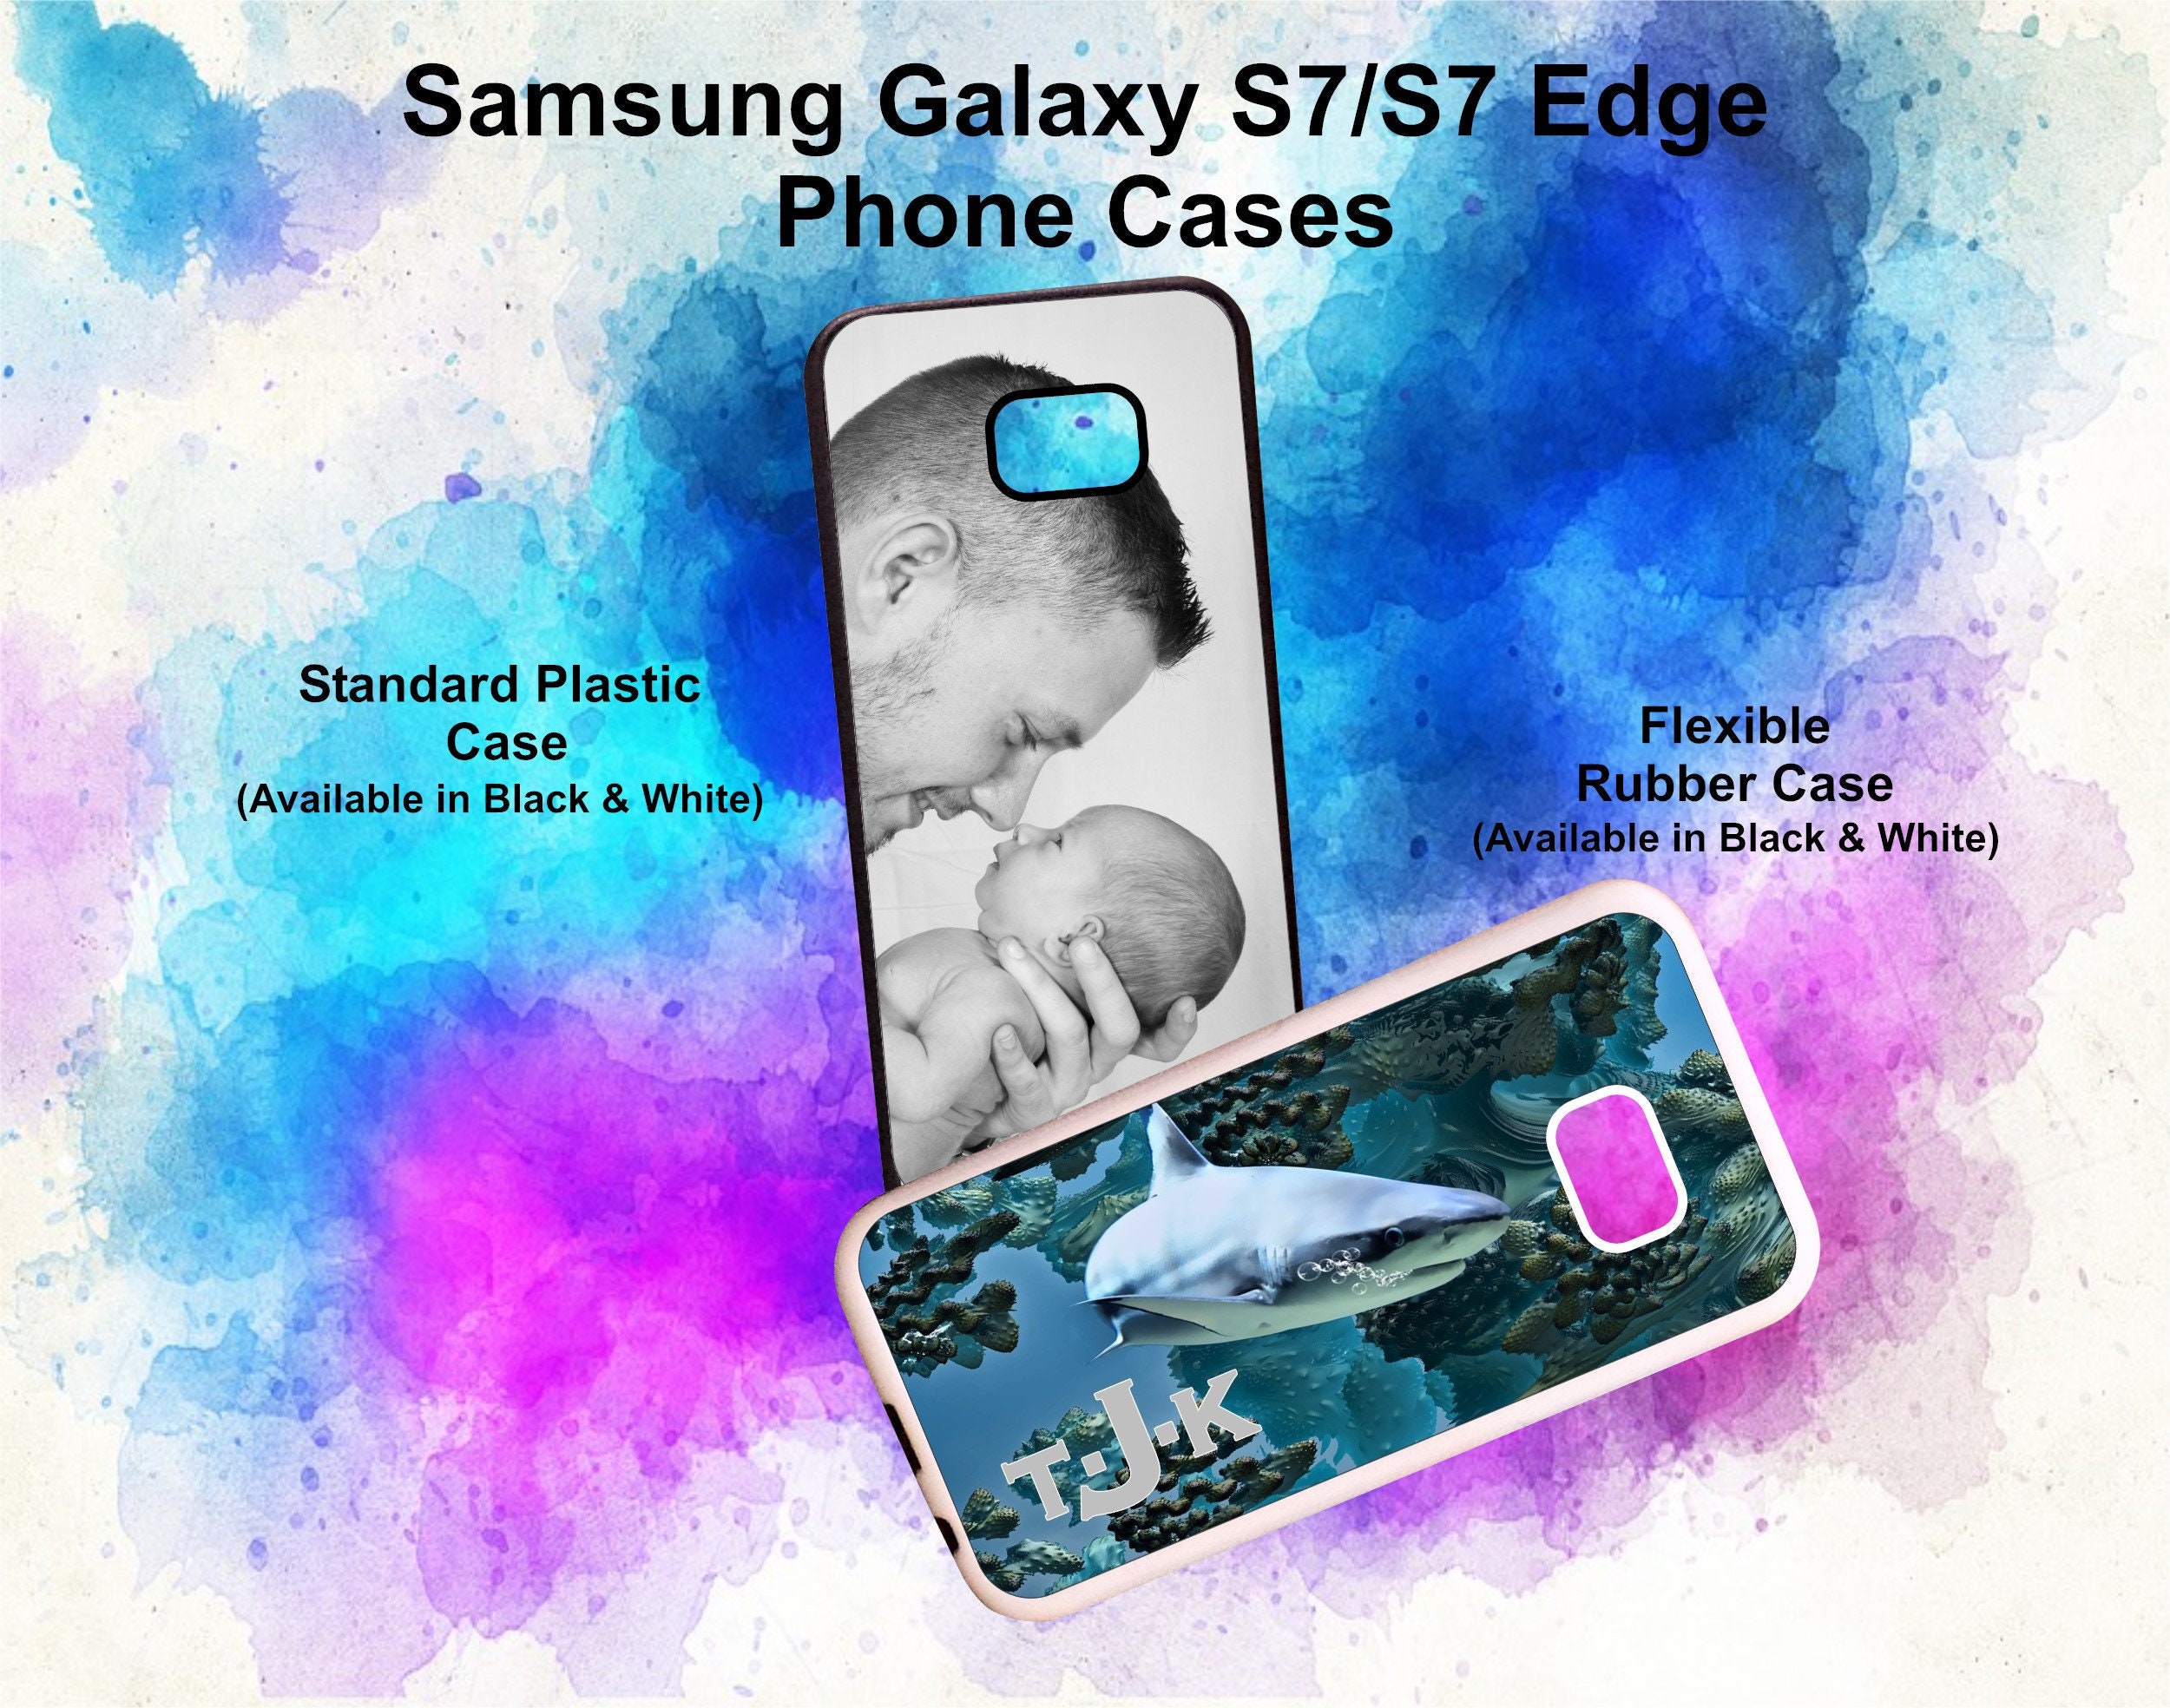 pindas voorwoord Waterig Galaxy S7 Case - Etsy